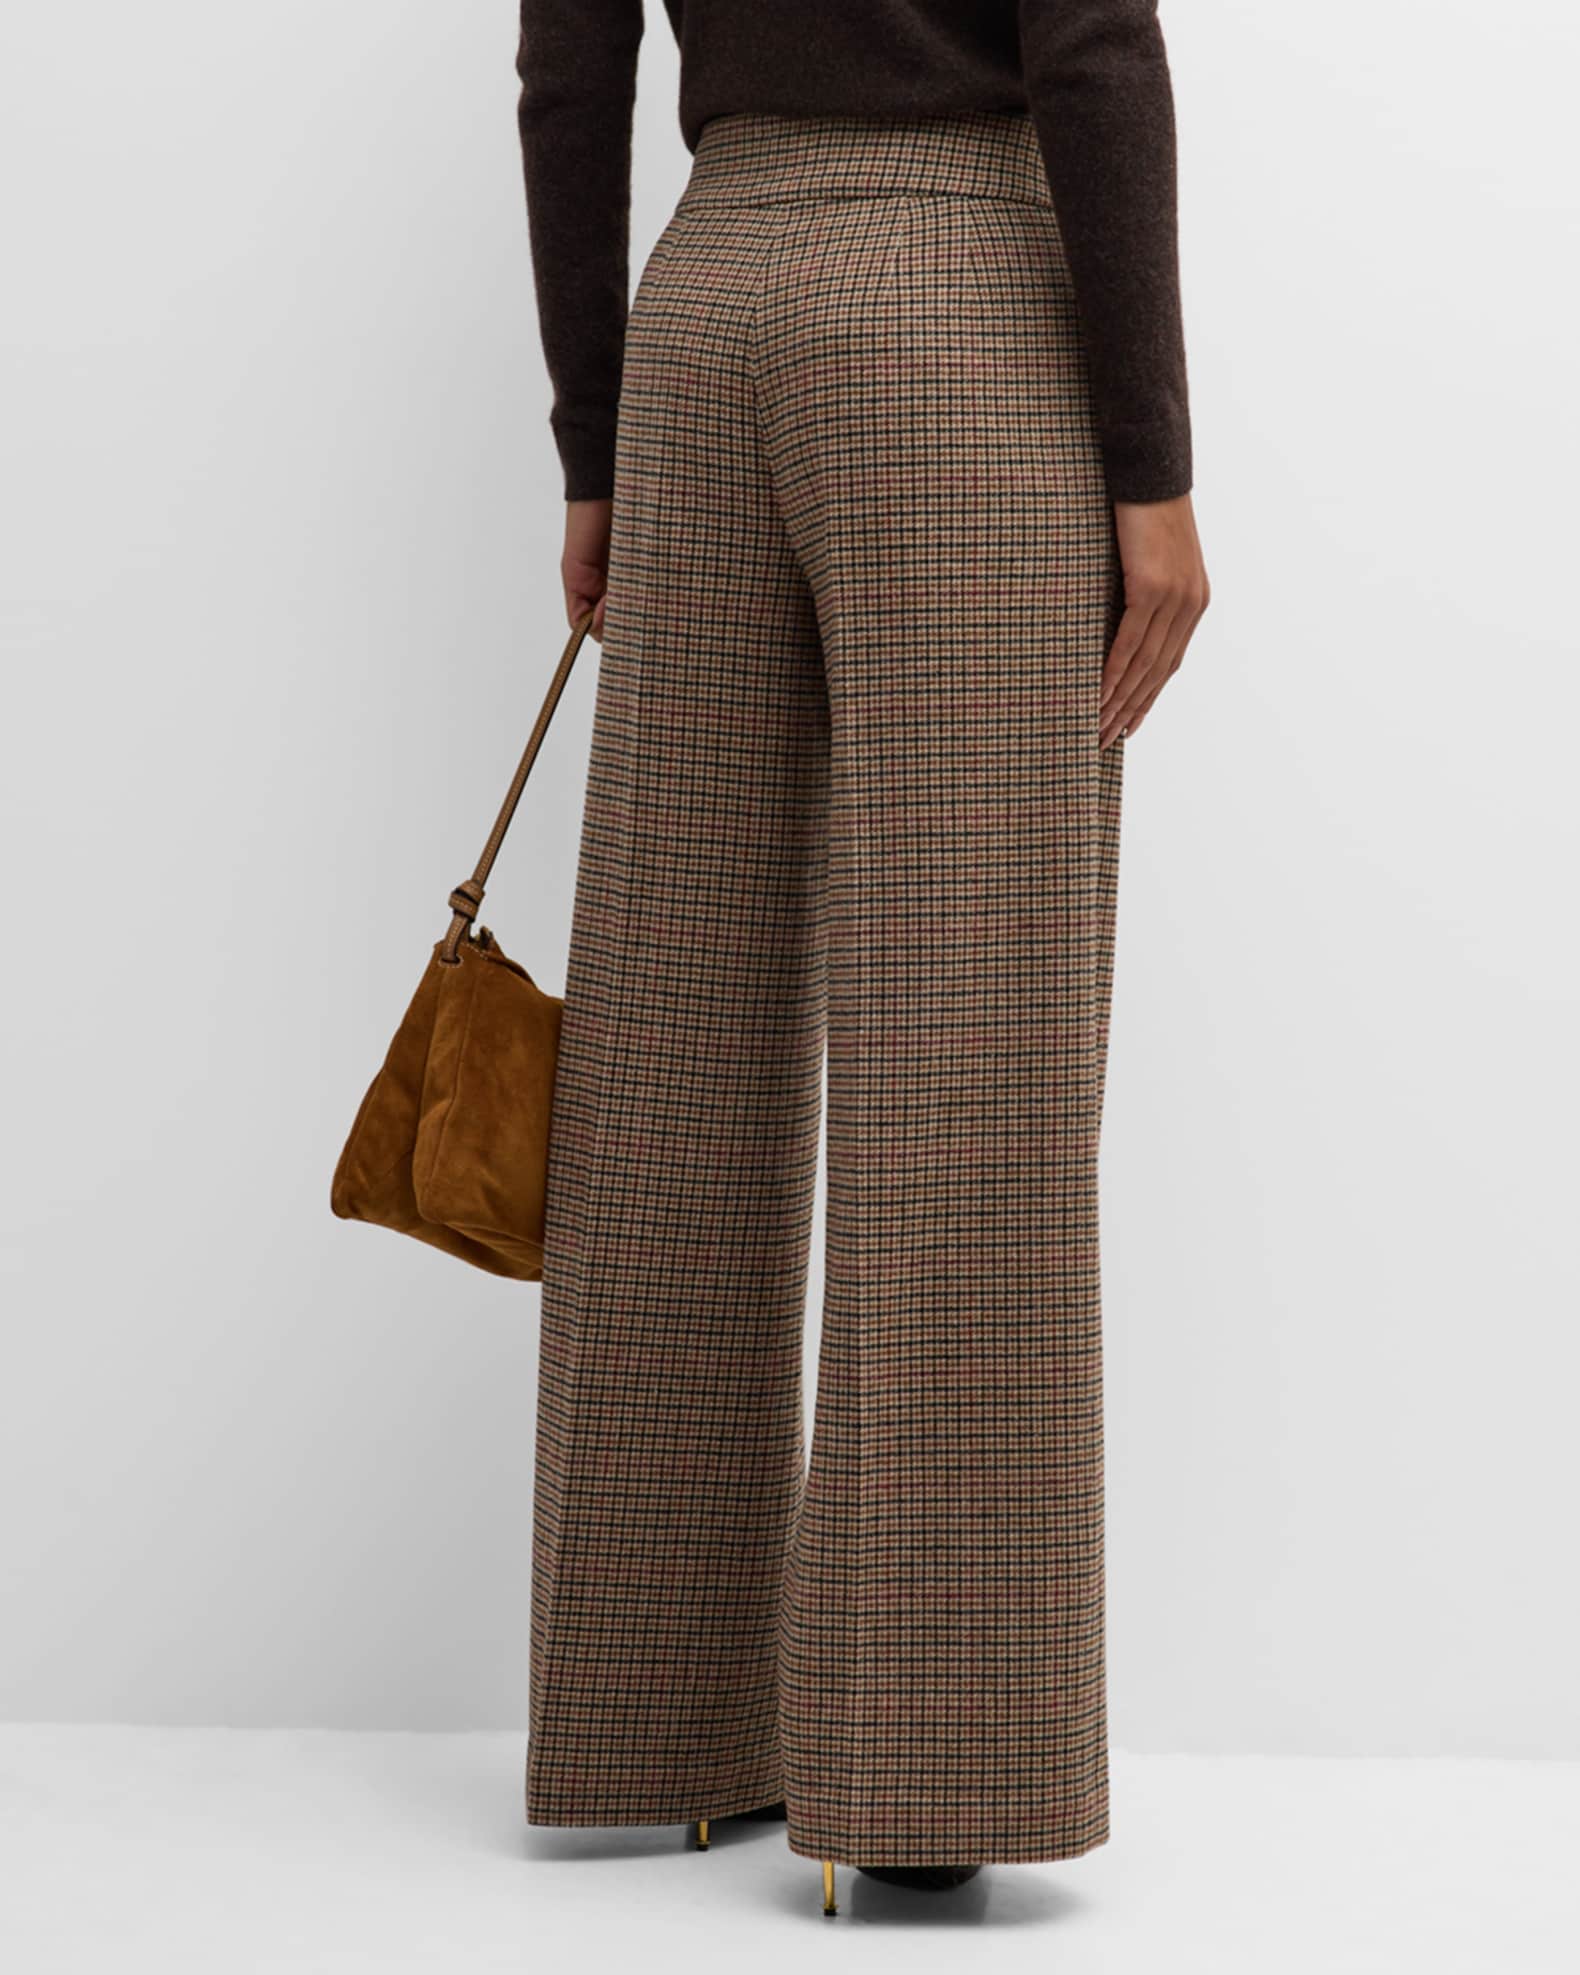 Louis Vuitton Wide Carpenter Trousers with Fringes Argent Lavande. Size 32